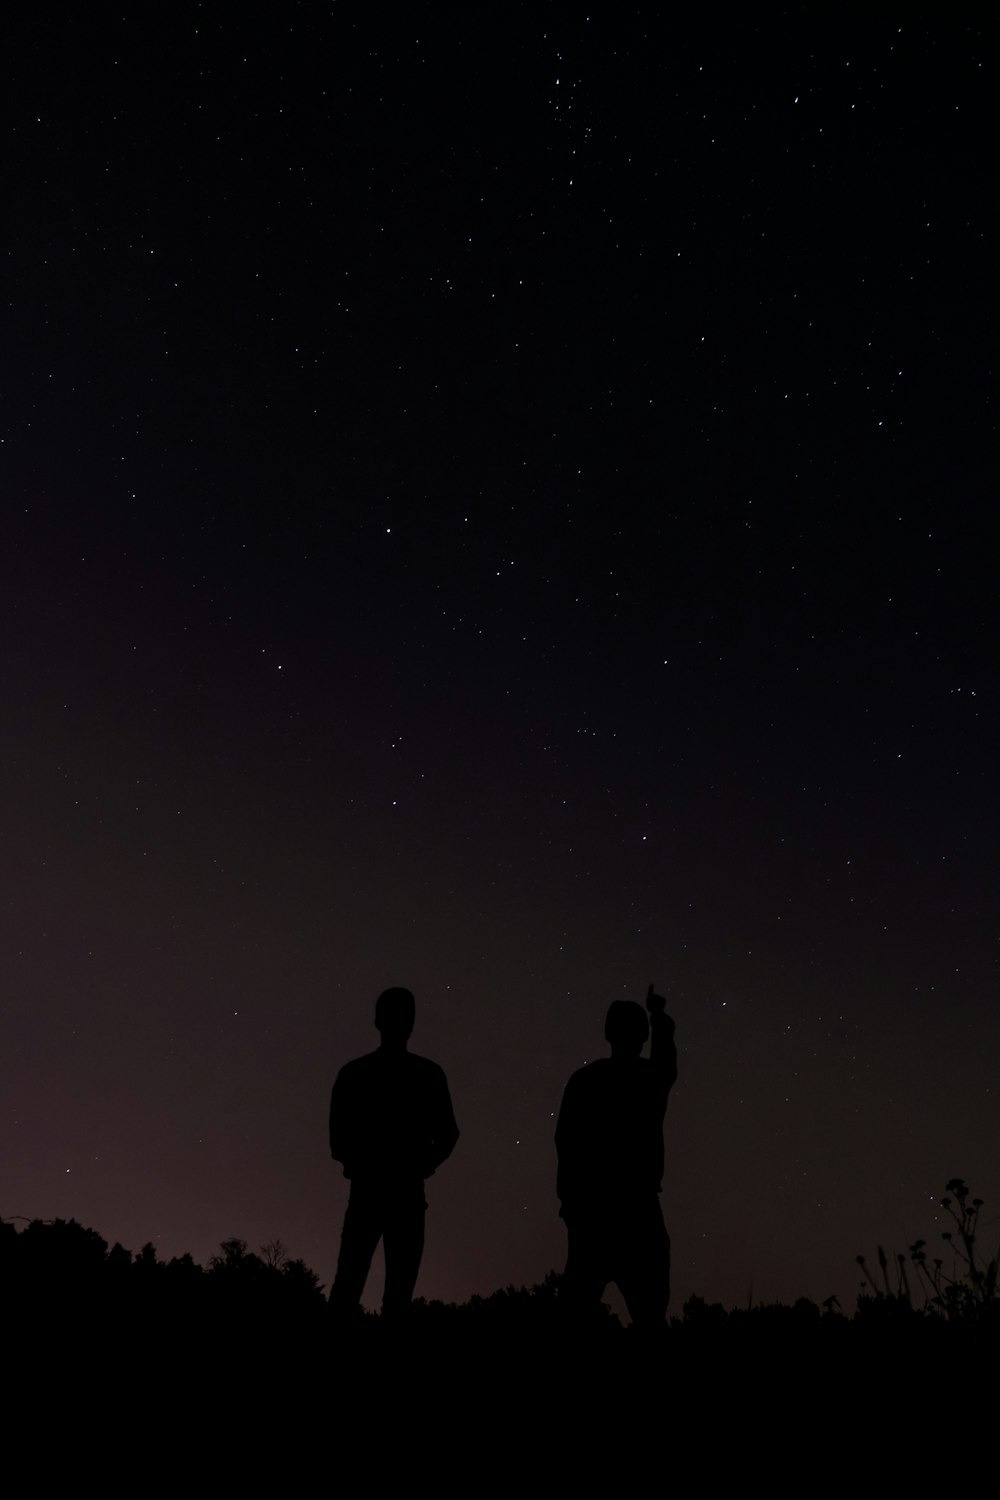 Fotografia della silhouette di due persone durante il giorno